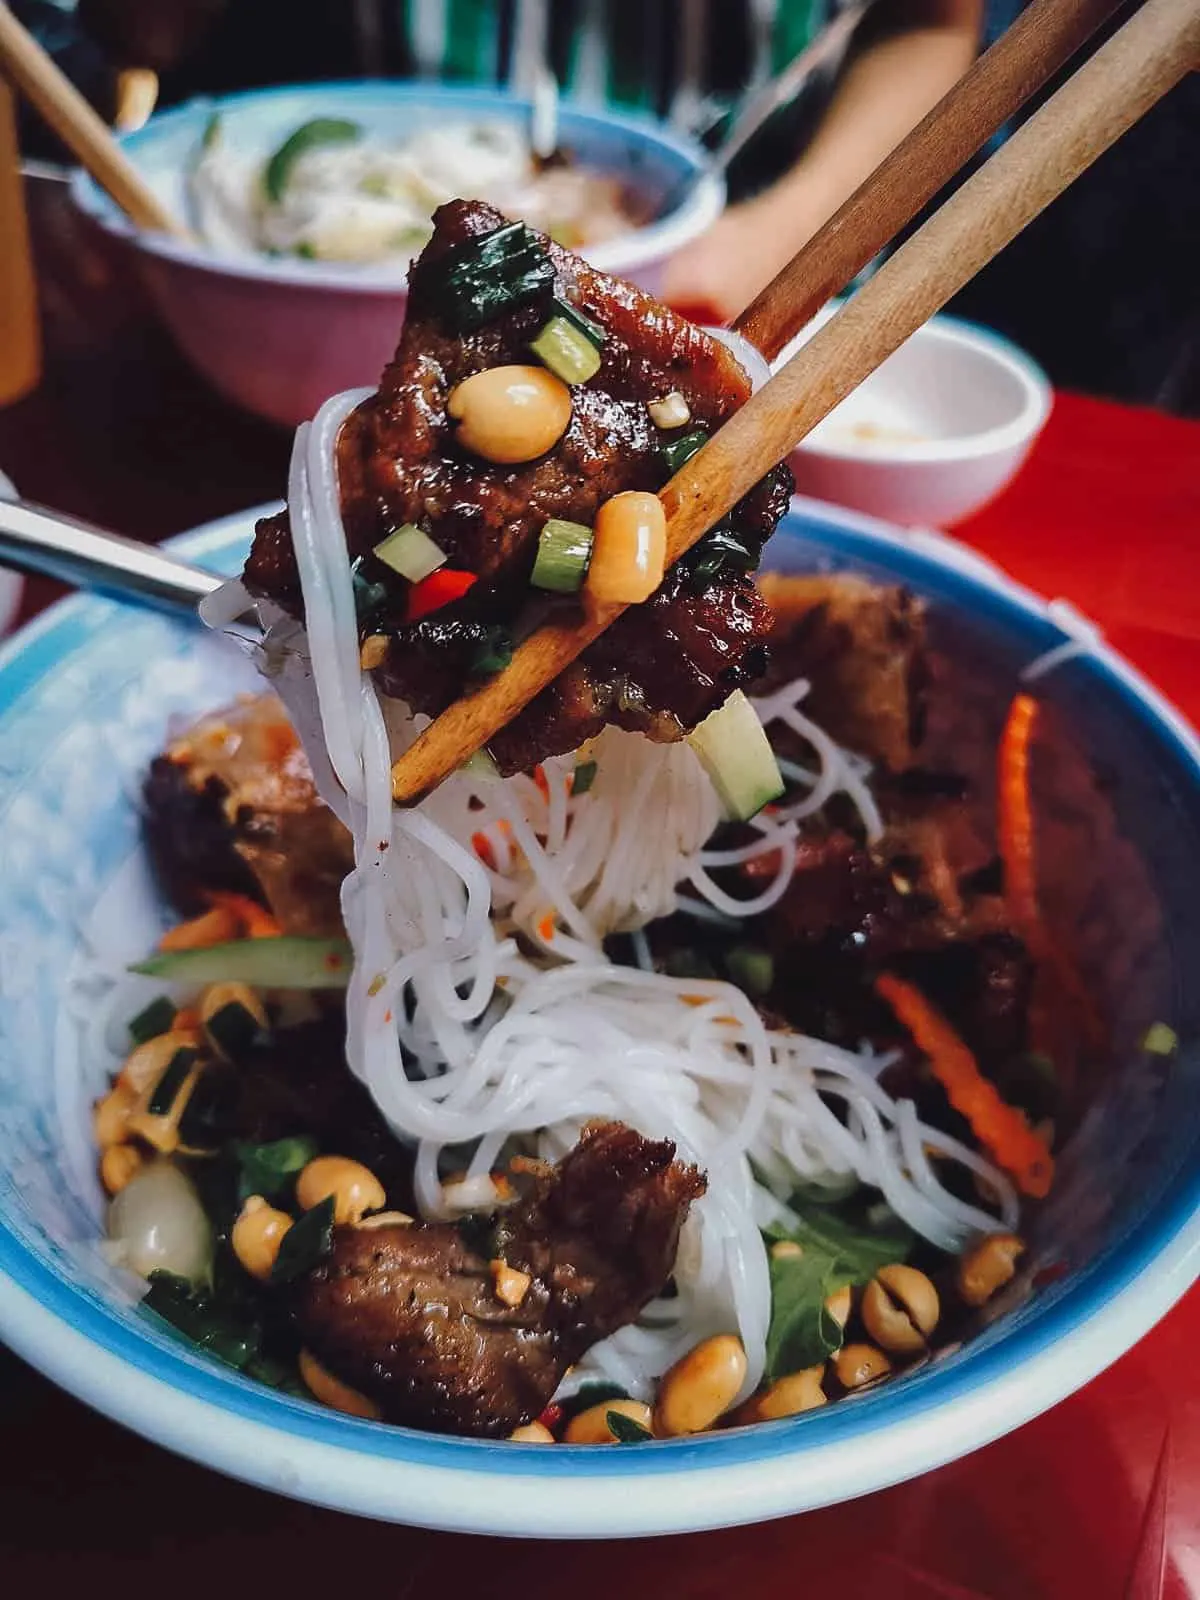 Bun thit nuong in Saigon, a delicious Vietnamese pork noodle dish similar to bun cha